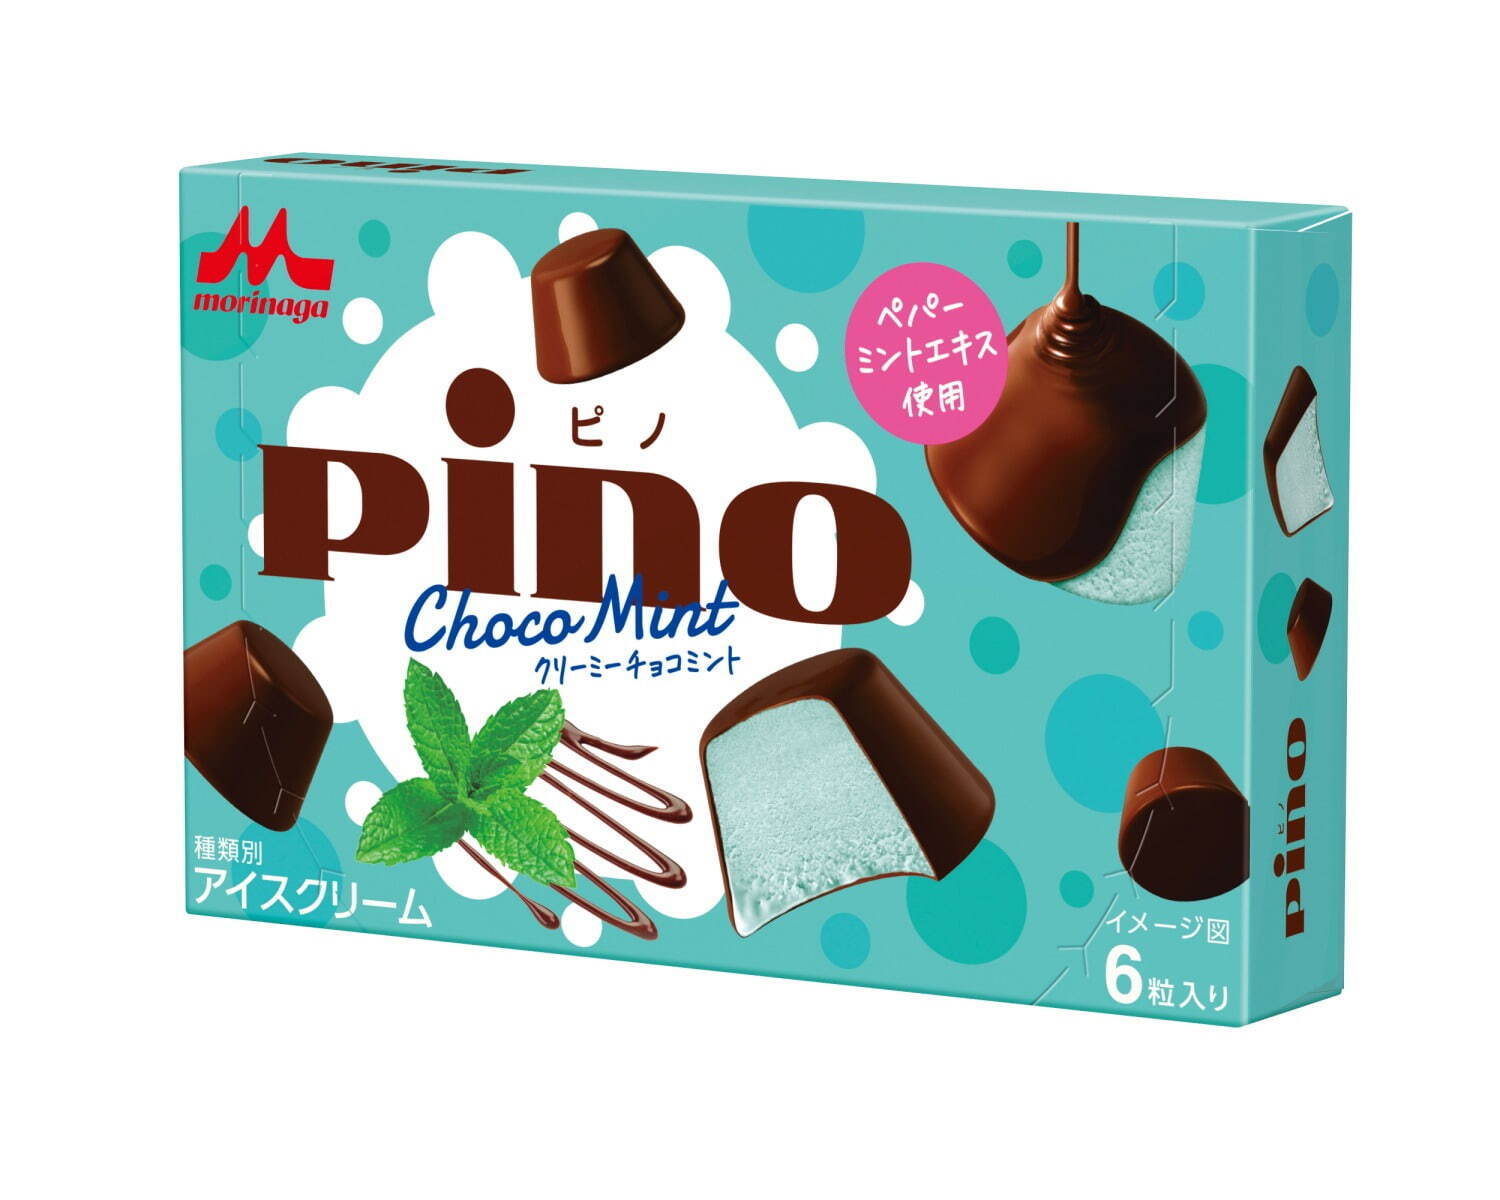 「ピノ クリーミーチョコミント」173円 ※希望小売価格